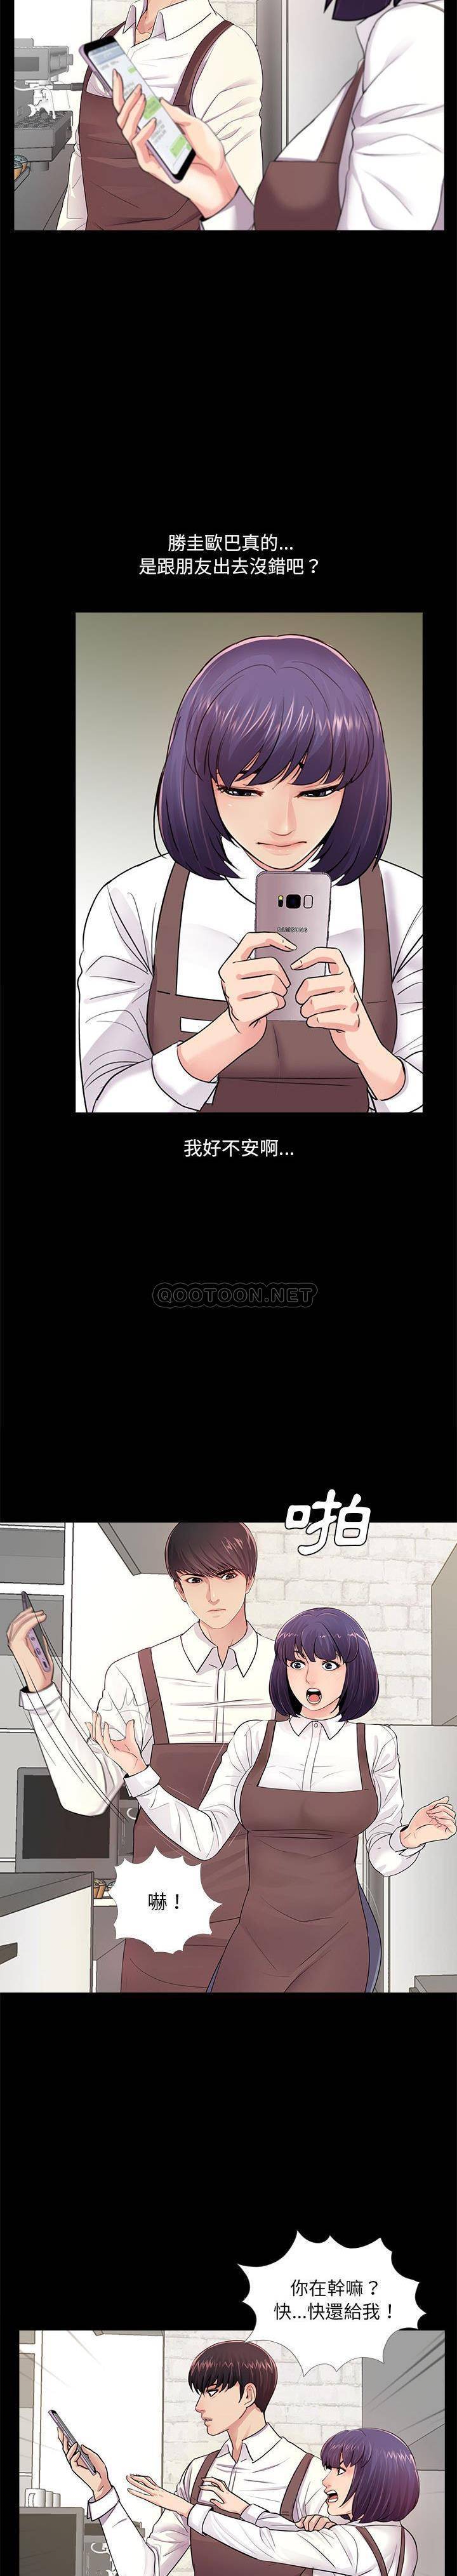 韩国污漫画 神秘復學生 第5话 3